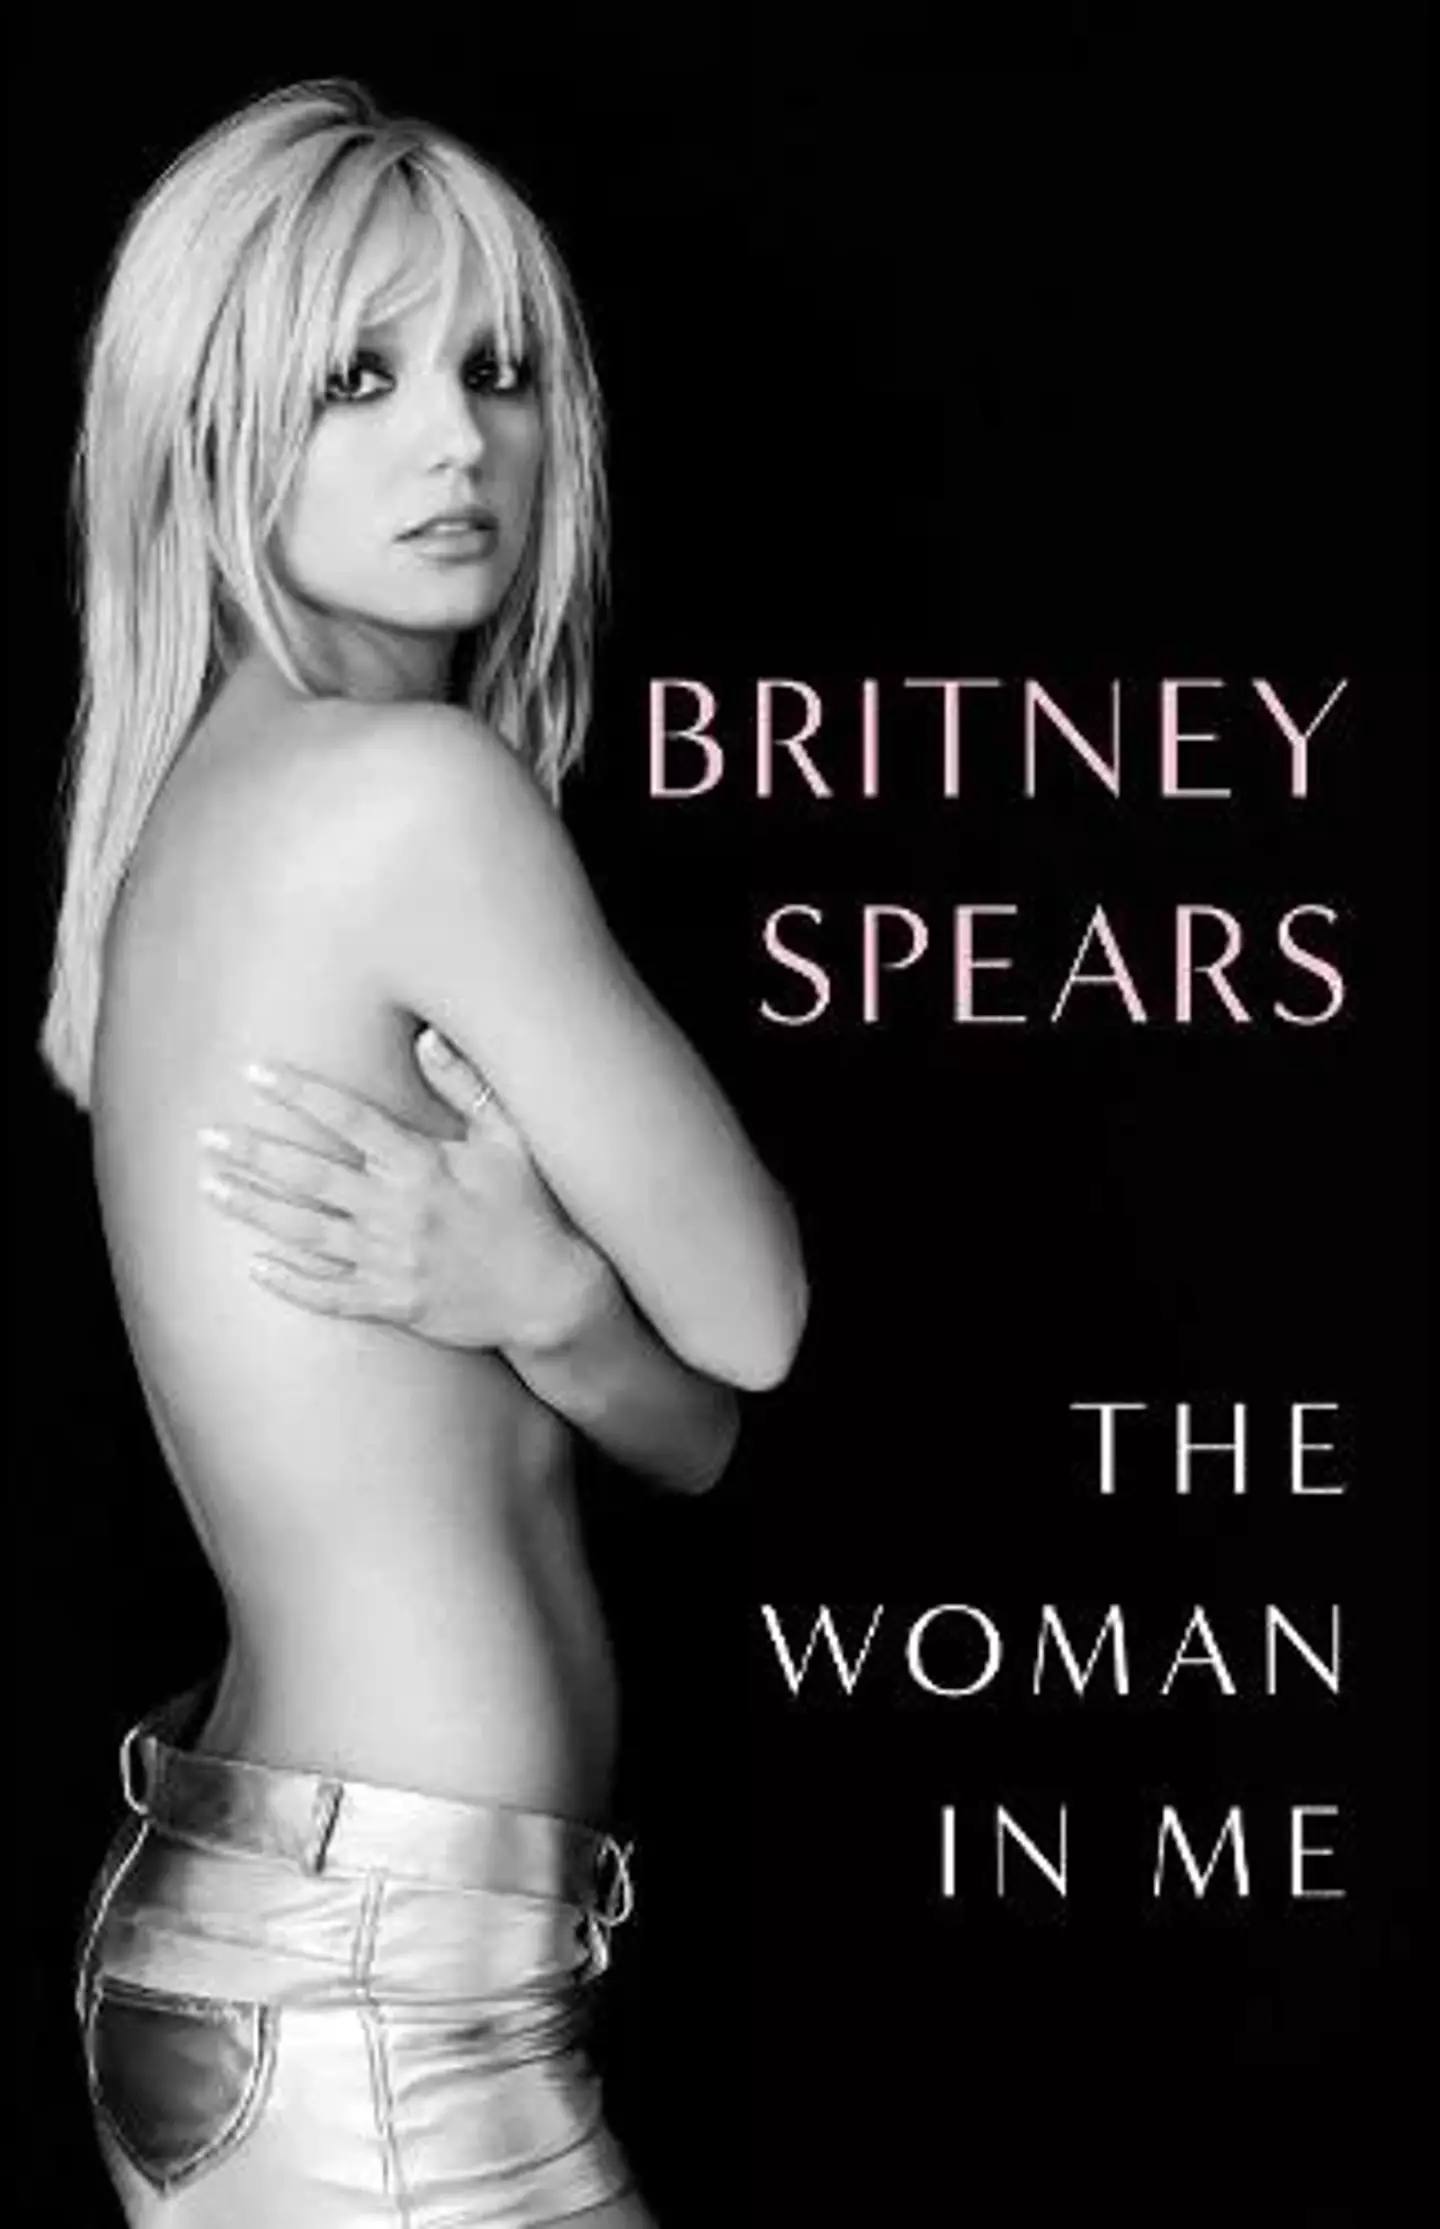 Britney Spears released her memoir last month.